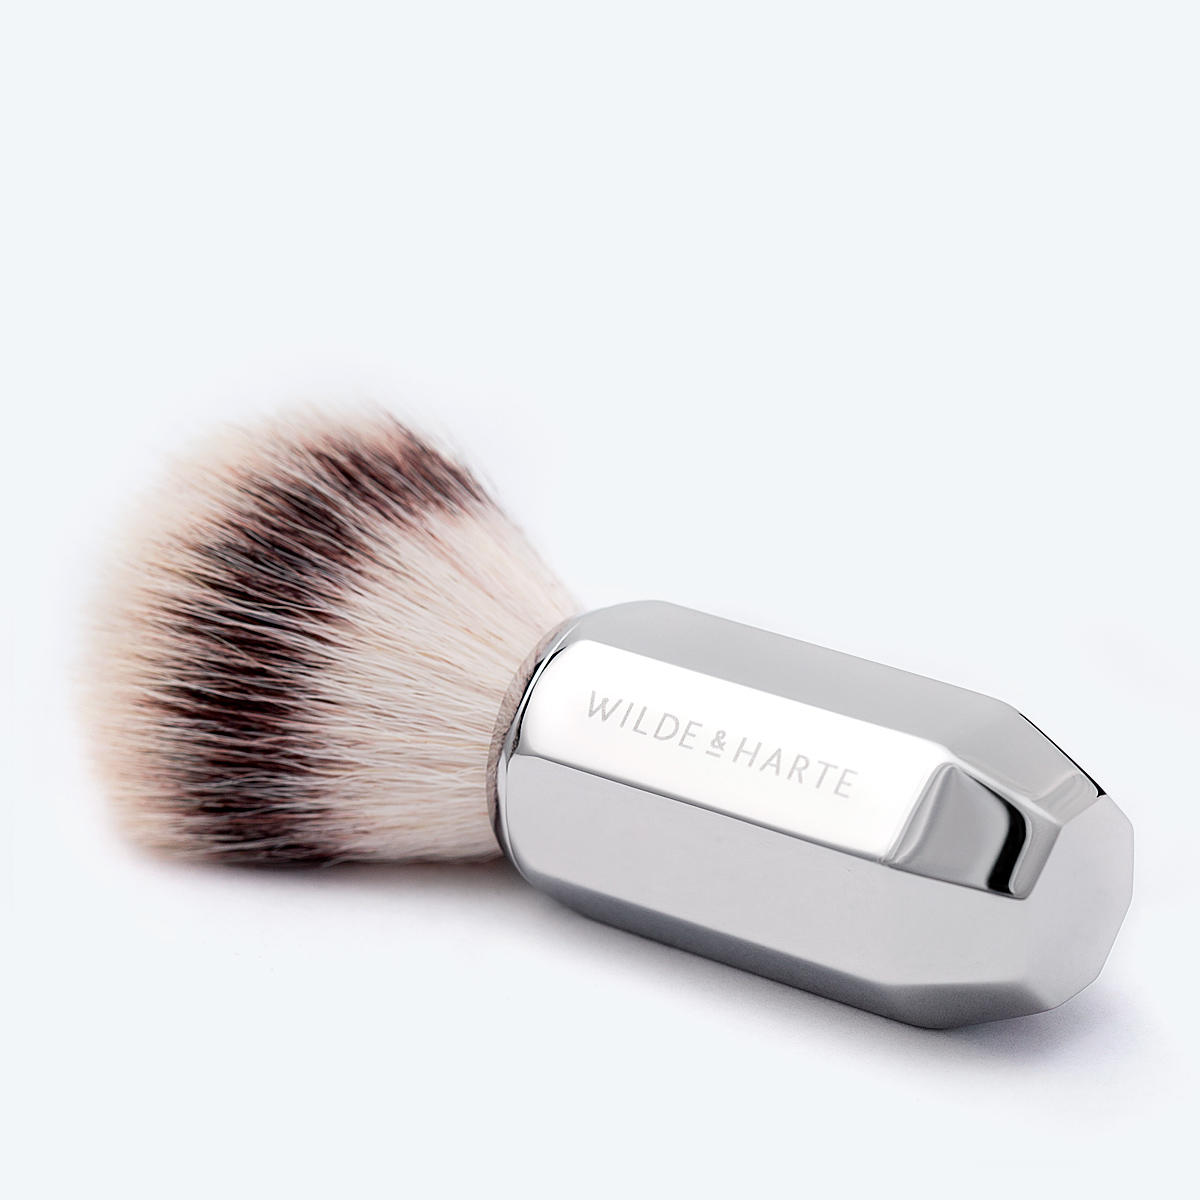 Synthetic Shaving Brush from Wilde & Harte